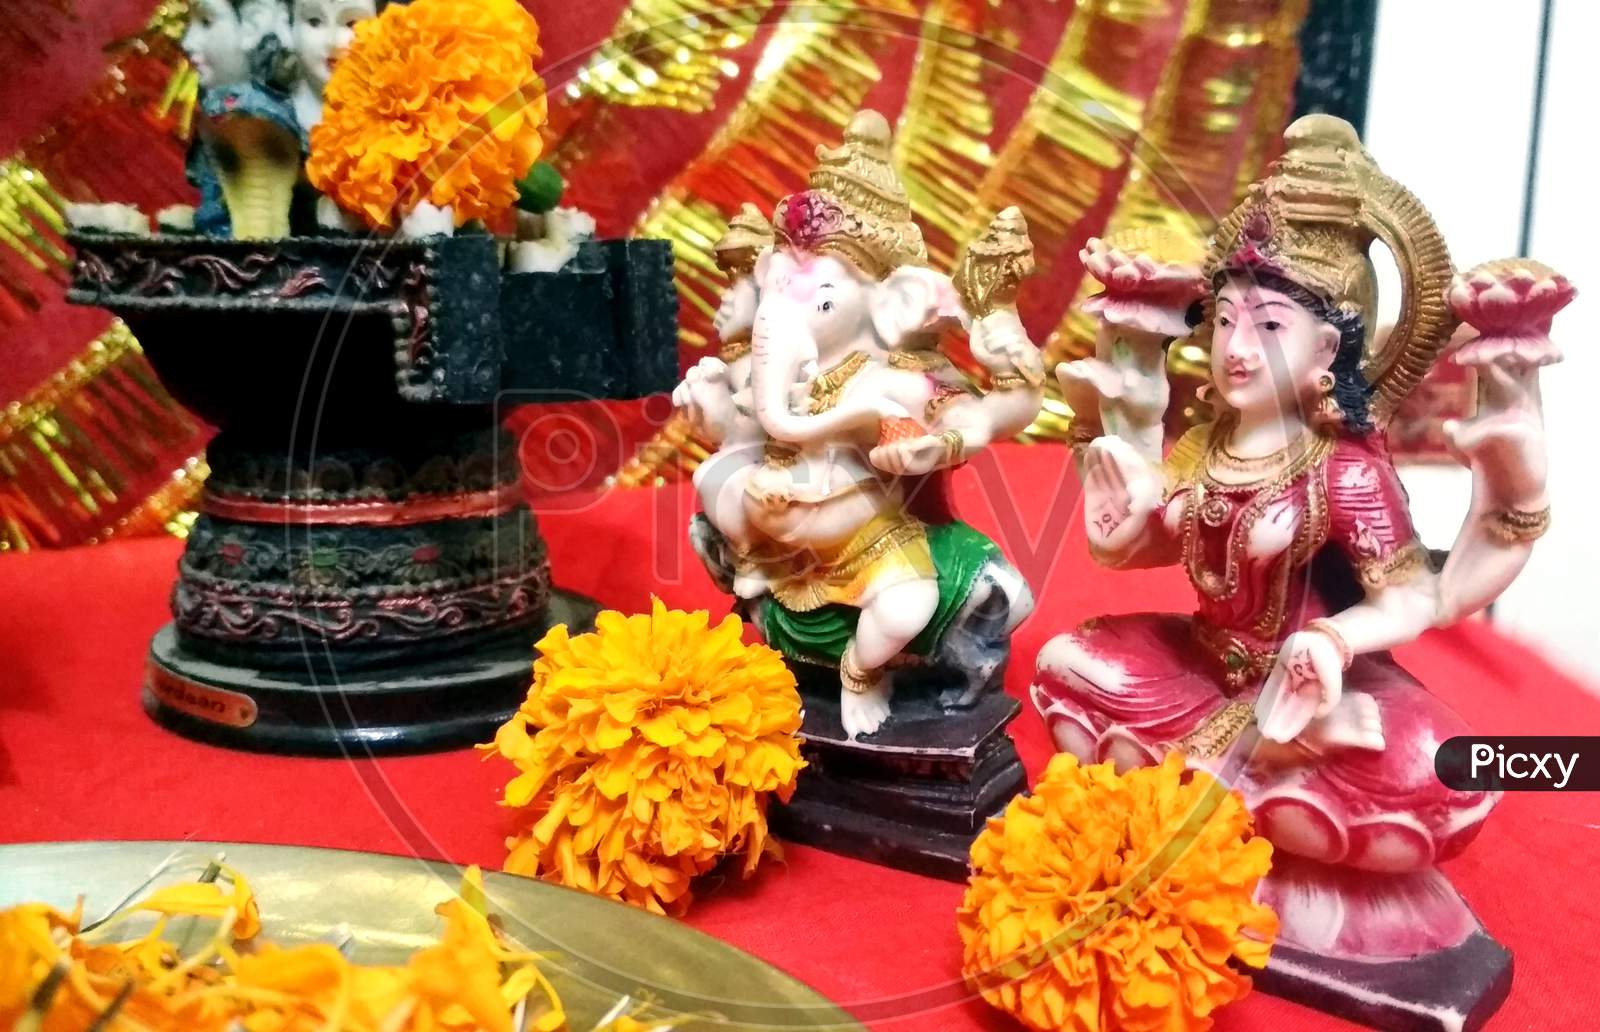 Lord Ganesha And Goddess Laxmi - Hindu Religion And Indian Celebration Of Diwali Festival